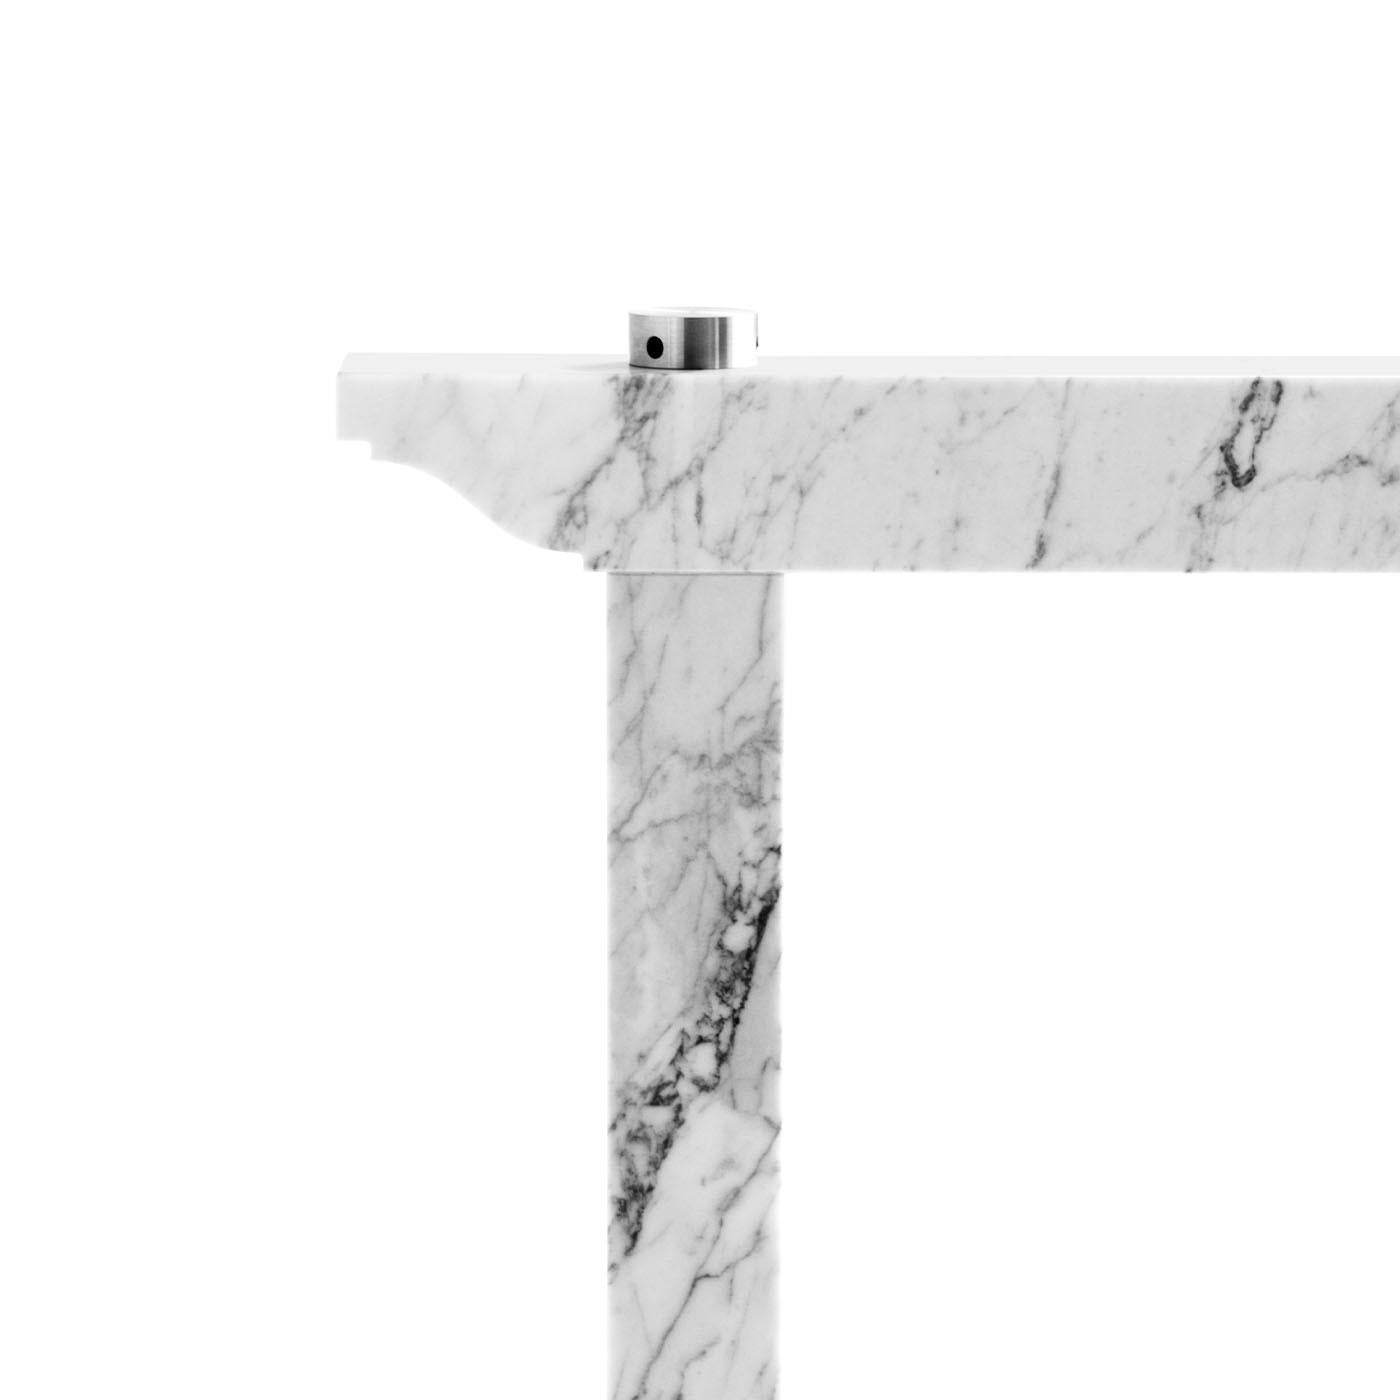 Ce tréteau en marbre blanc de Carrare, conçu par Enrico Tonucci, est destiné à supporter des plateaux en verre, en bois, en marbre ou en d'autres matériaux. Ses lignes, rigoureuses et quadrillées, dessinent une lettre U renversée. Le seul caprice